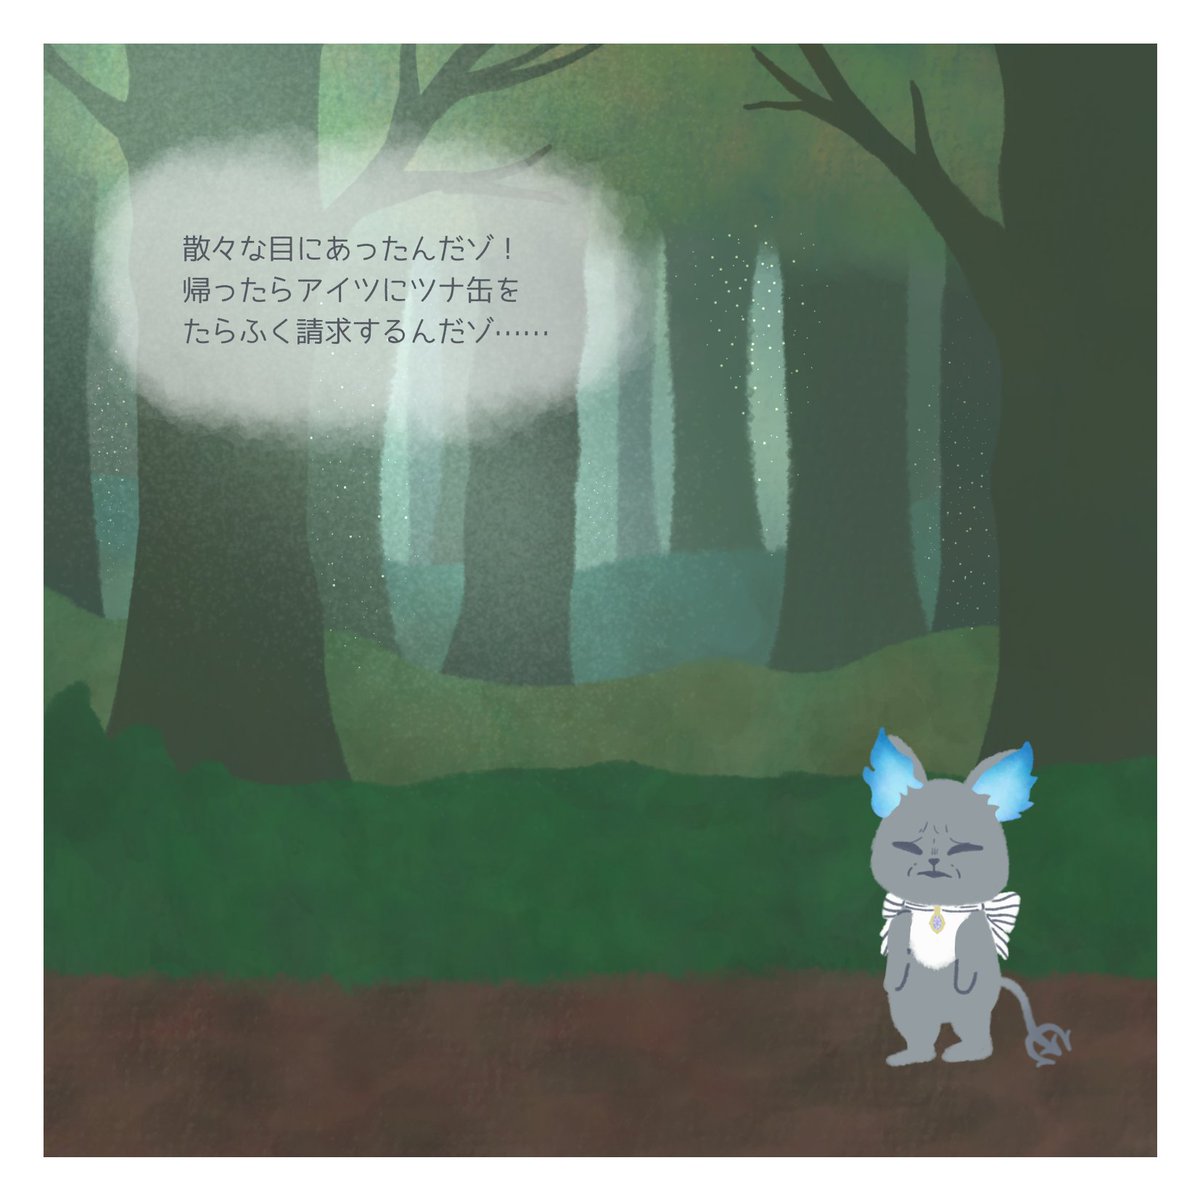 【グリムの旅】
第2話:迷いの森
#ツイステファンアート 